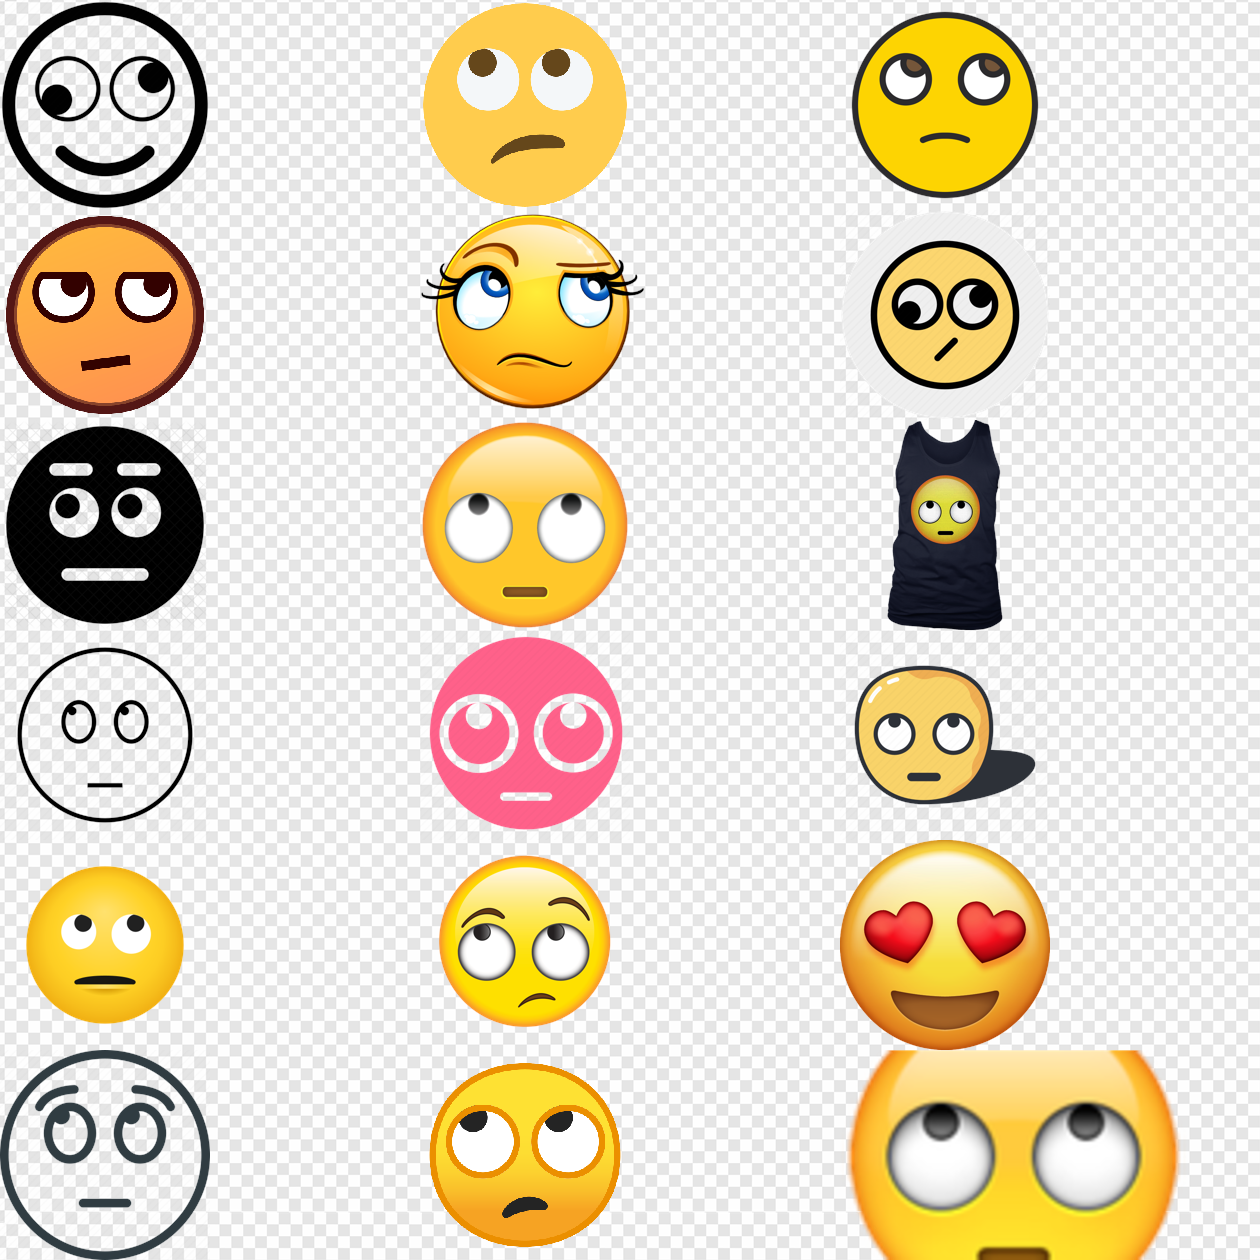 Eye Roll Emoji PNG Transparent Images Download - PNG Packs